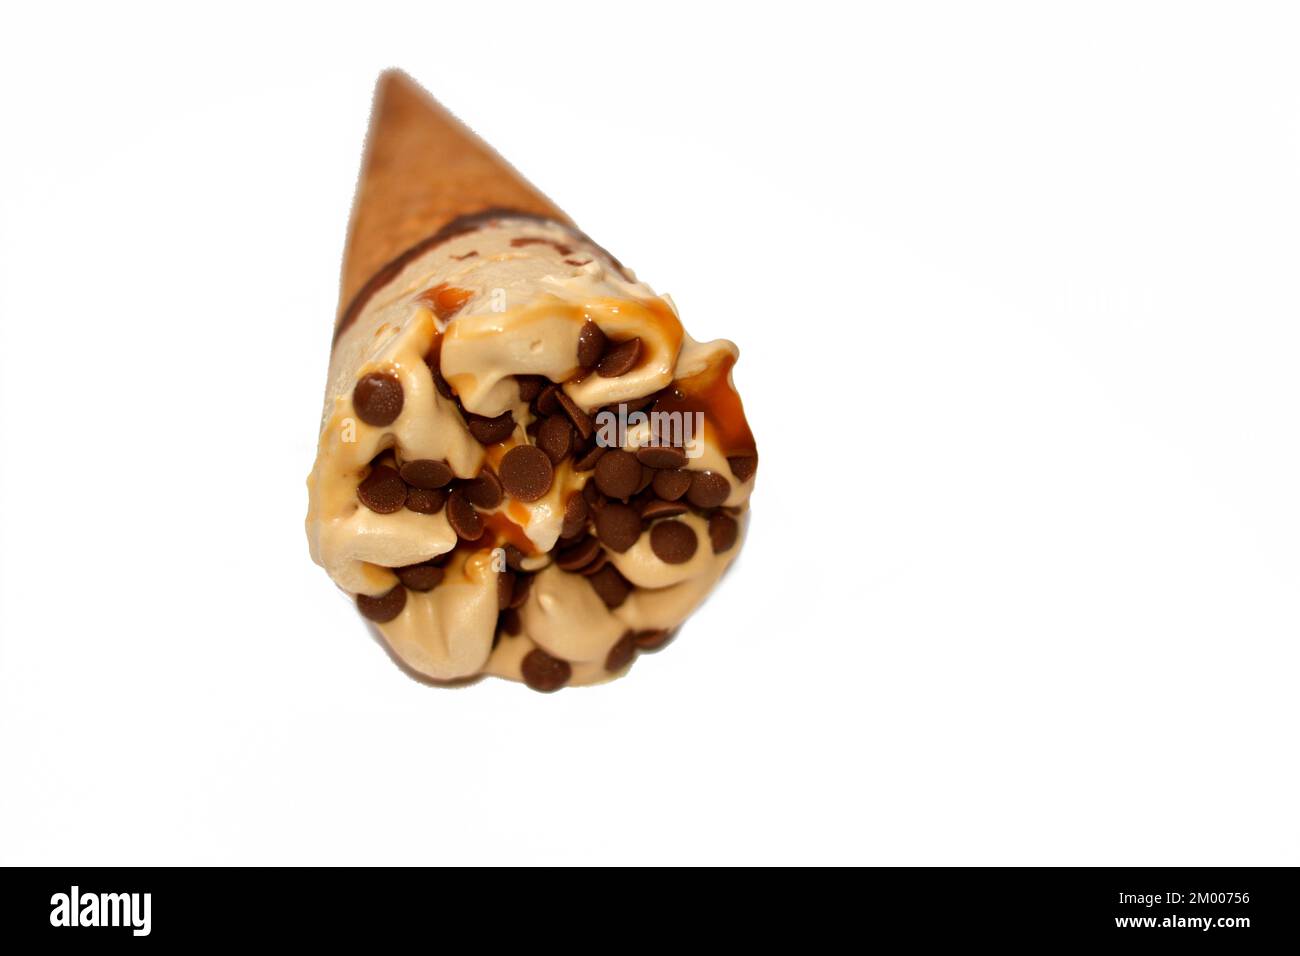 Eiscreme aus Kakao-, Schokoladen- und Vanilleeis mit Schokoladenstückchen in knusprigen Waffeln, selektiver Fokus auf schmelzendes kaltes Eis Stockfoto